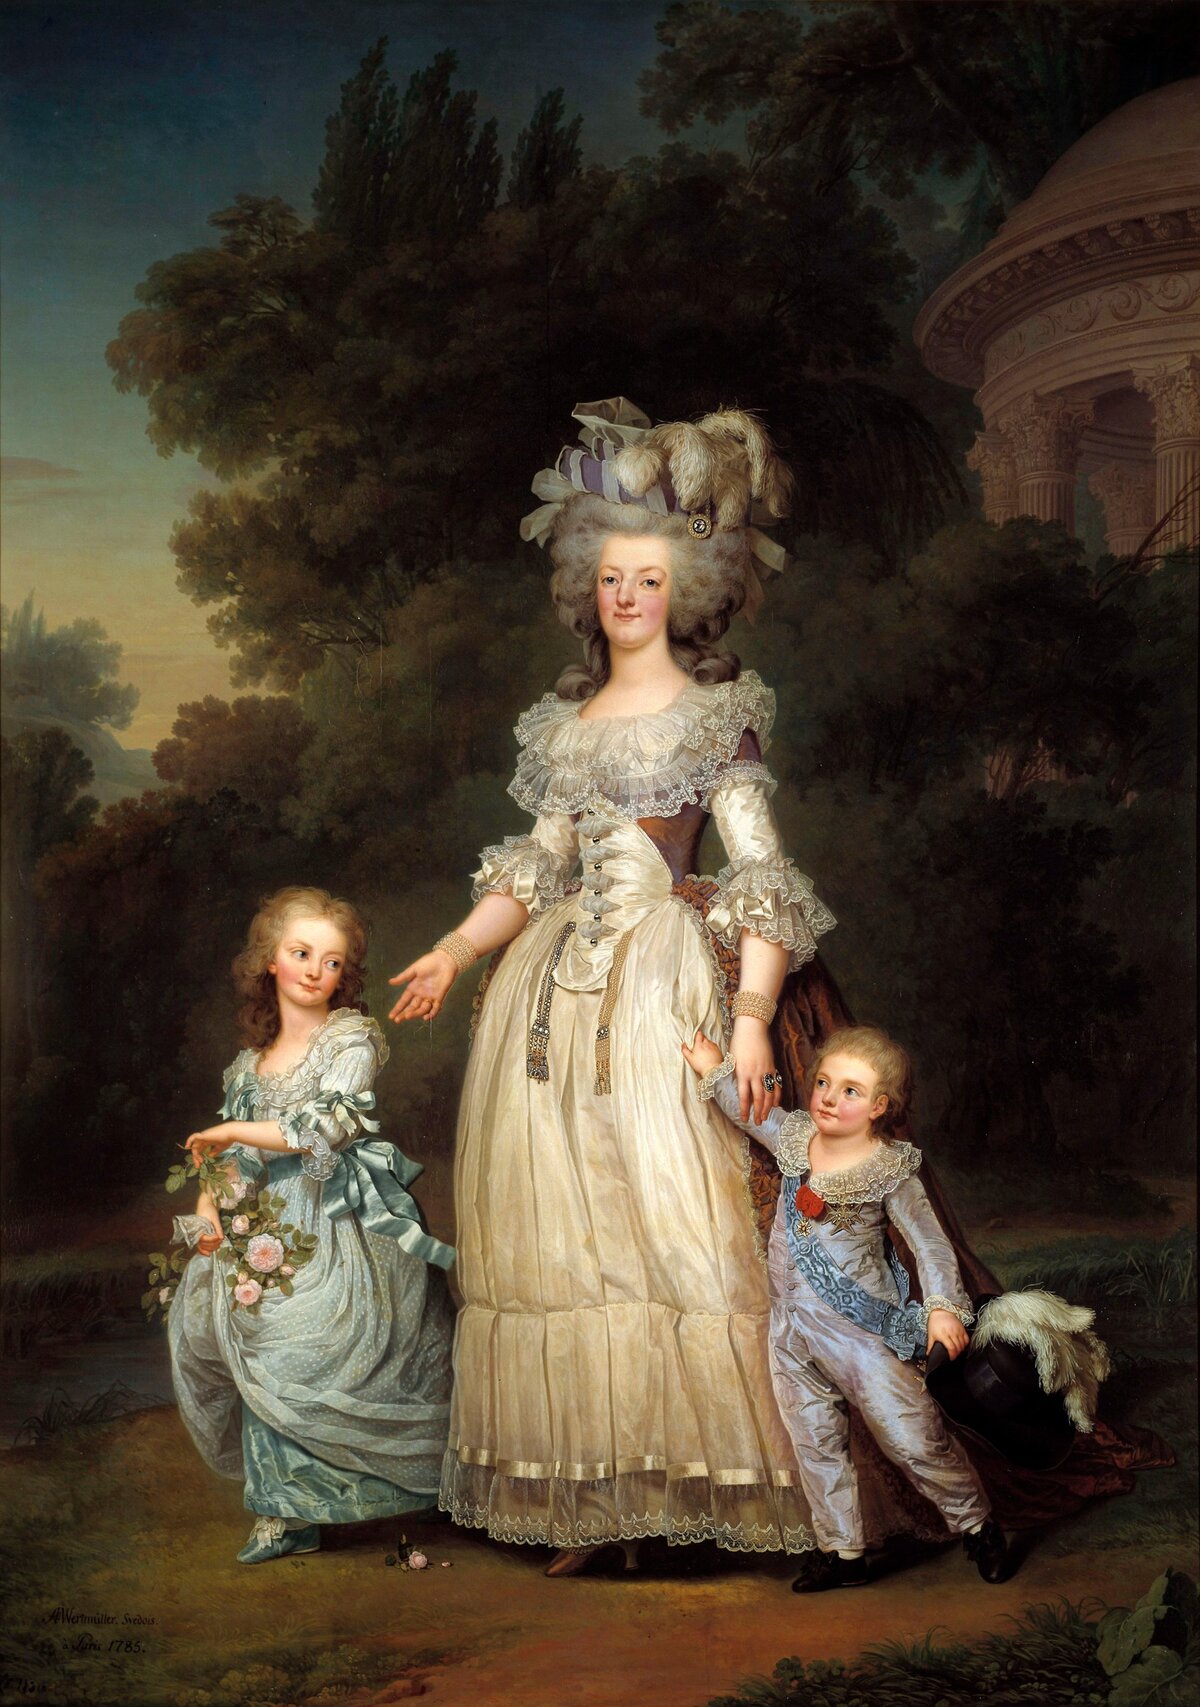 Marie Antoinette Maria Antonia Josepha Joanna, ismertebb nevén Marie Antoinette 1755. november 2-án született Bécsben. Franciaország utolsó királynője Madame Deficit gúnynéven a monarchia túlkapásainak szimbólumává vált, számtalan röpirat vádolta pazarlással és házasságtöréssel. A pénzügyi káosz és a rossz termés országszerte megemelte a gabonaárakat, így Marie Antoinette extravagáns életmódjával gyűlölettel teli kritikák kereszttüzébe került. Kilenc hónappal férje, XVI. Lajos után a forradalmi törvényszék parancsára 1793-ban, 37 éves korában lefejezték.